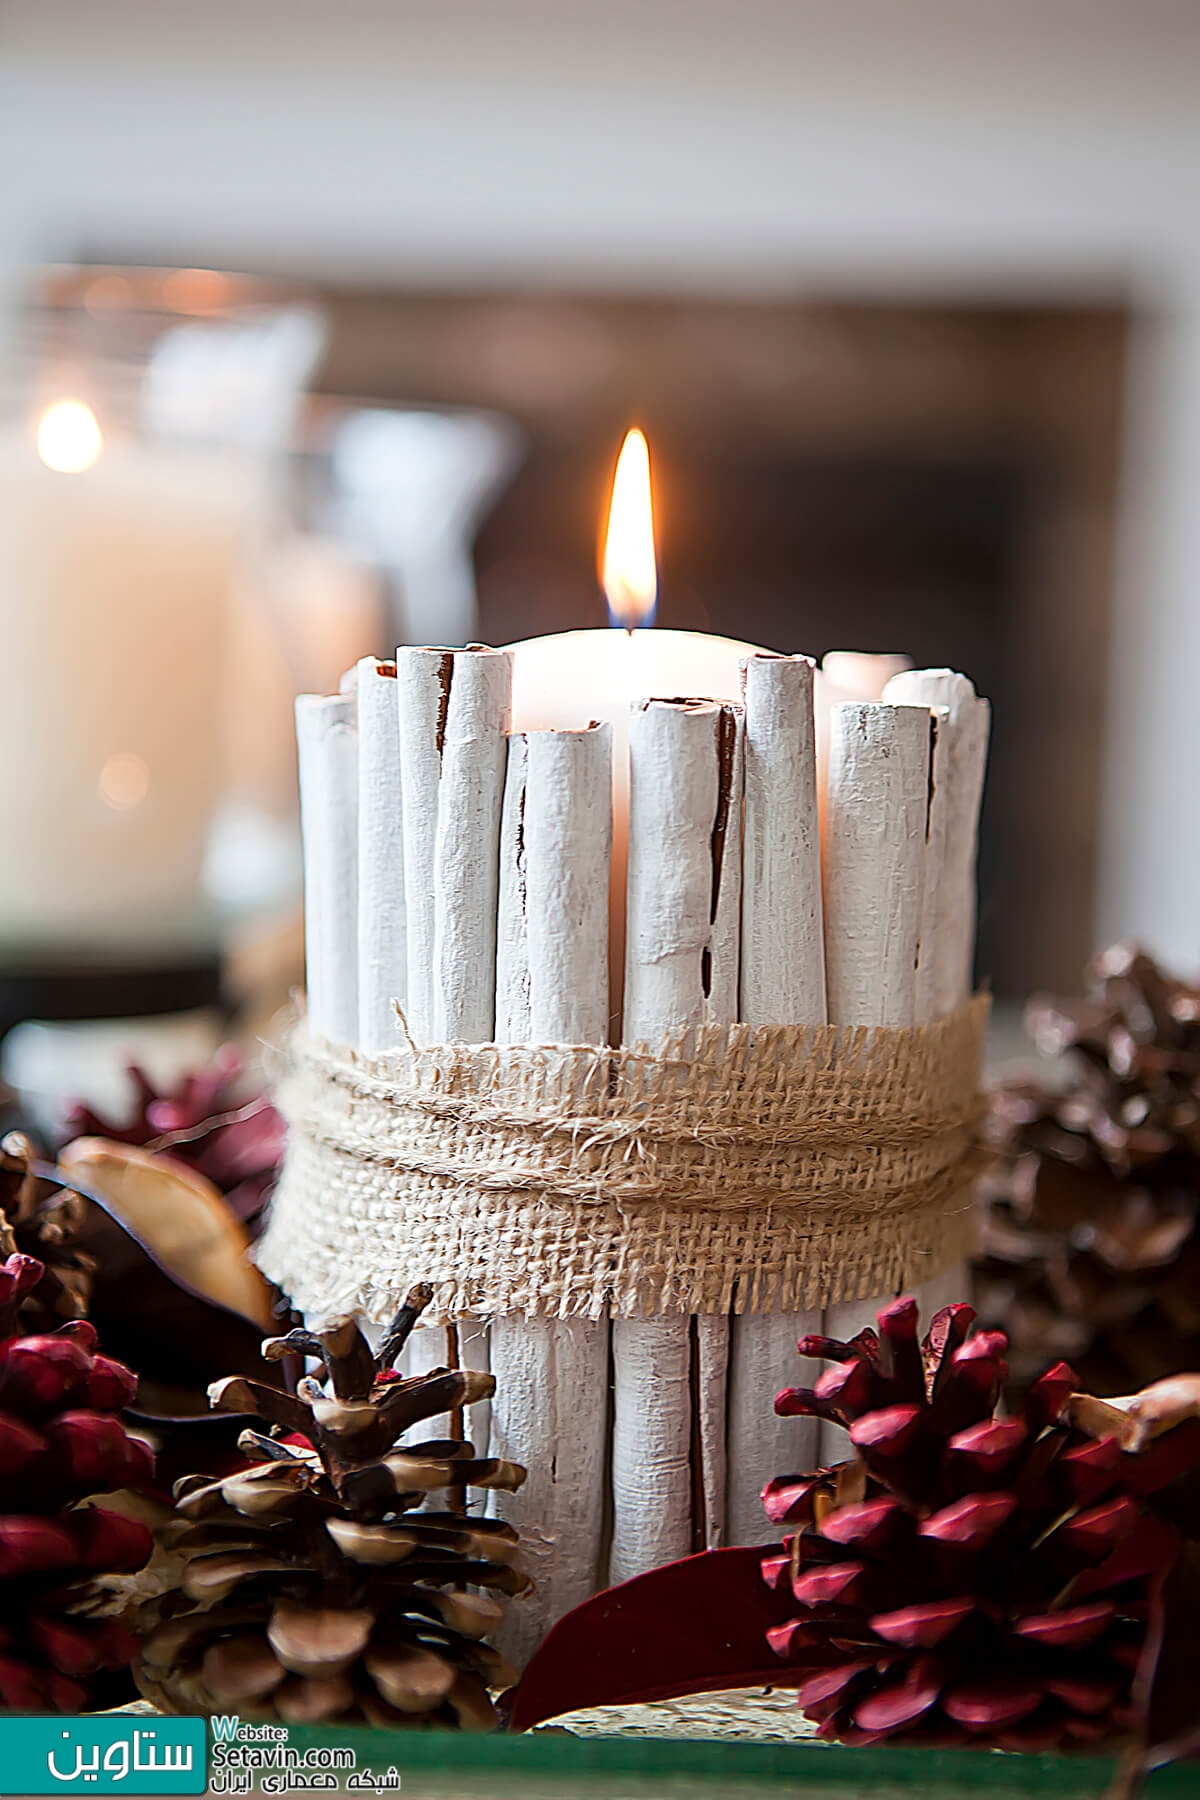 ۳۲ ایده تزپین شمع سازی برای رویایی و صمیمی کردن خانه